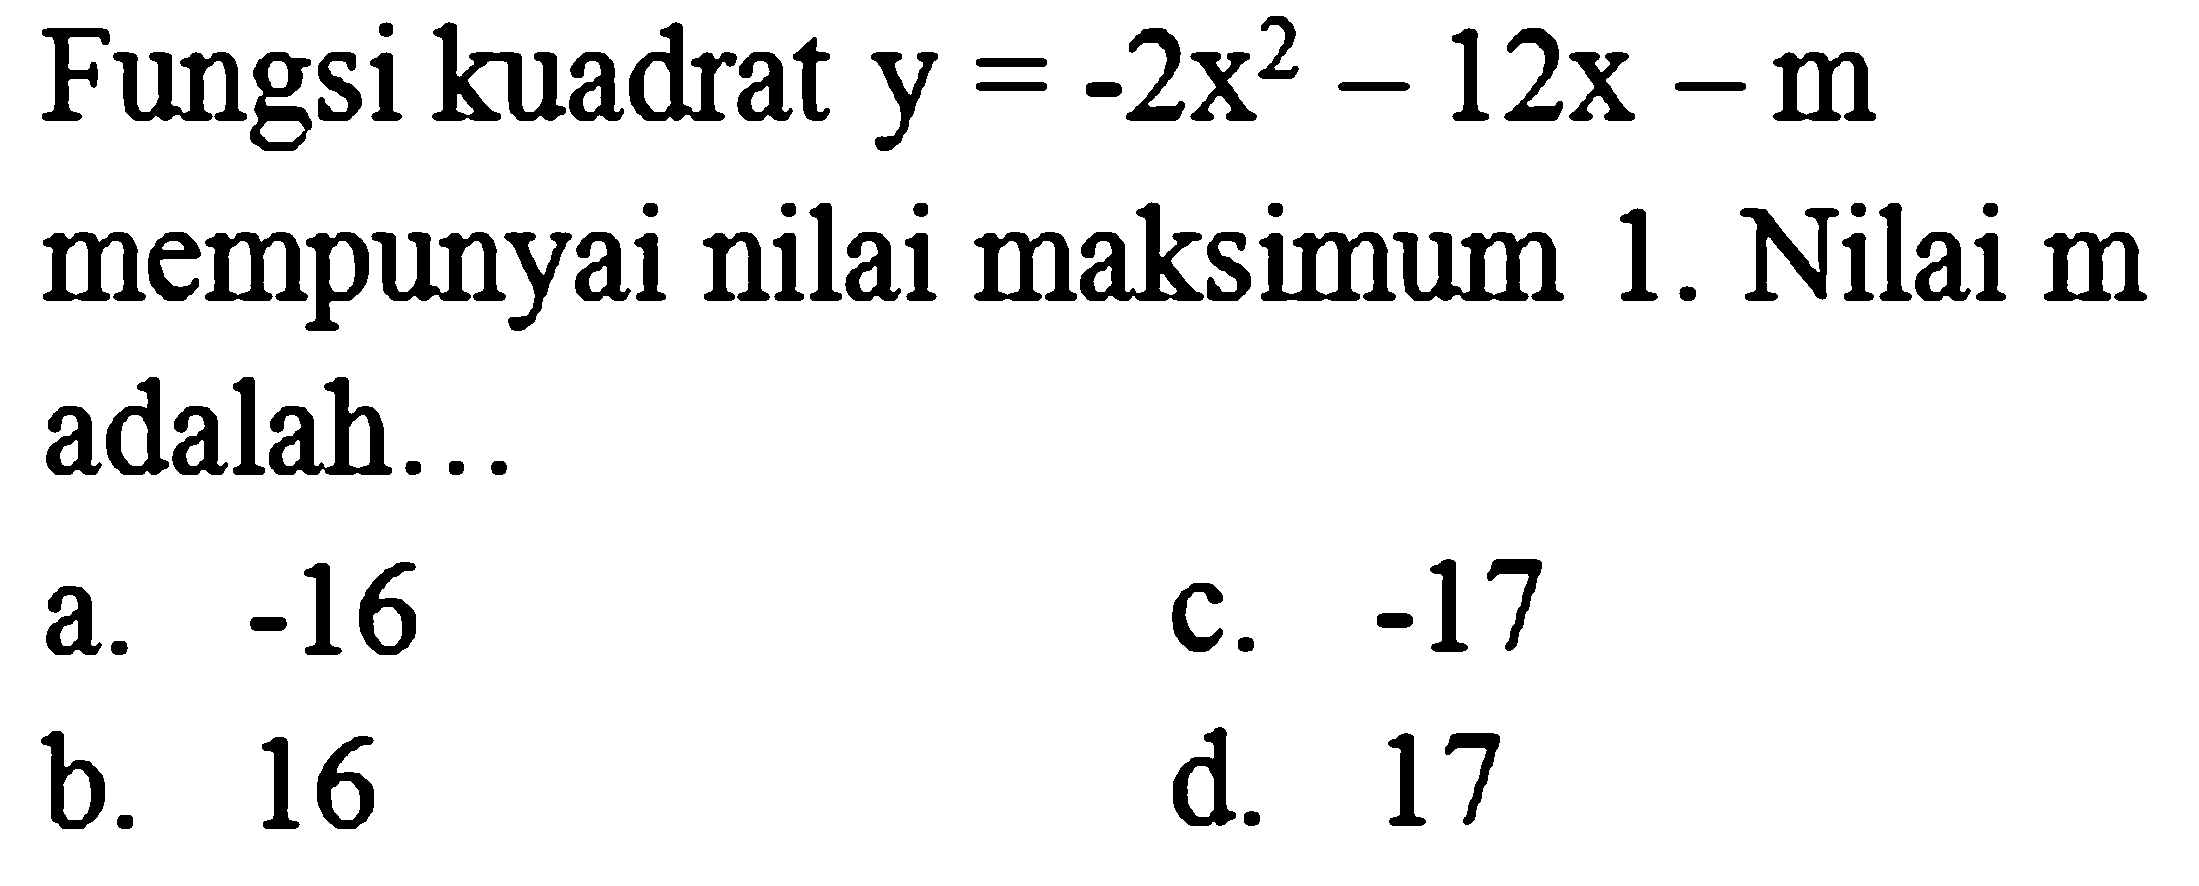 Fungsi kuadrat  y=-2 x^(2)-12 x-m  mempunyai nilai maksimum 1. Nilai m adalah...
a.  -16 
c.  -17 
b. 16
d. 17